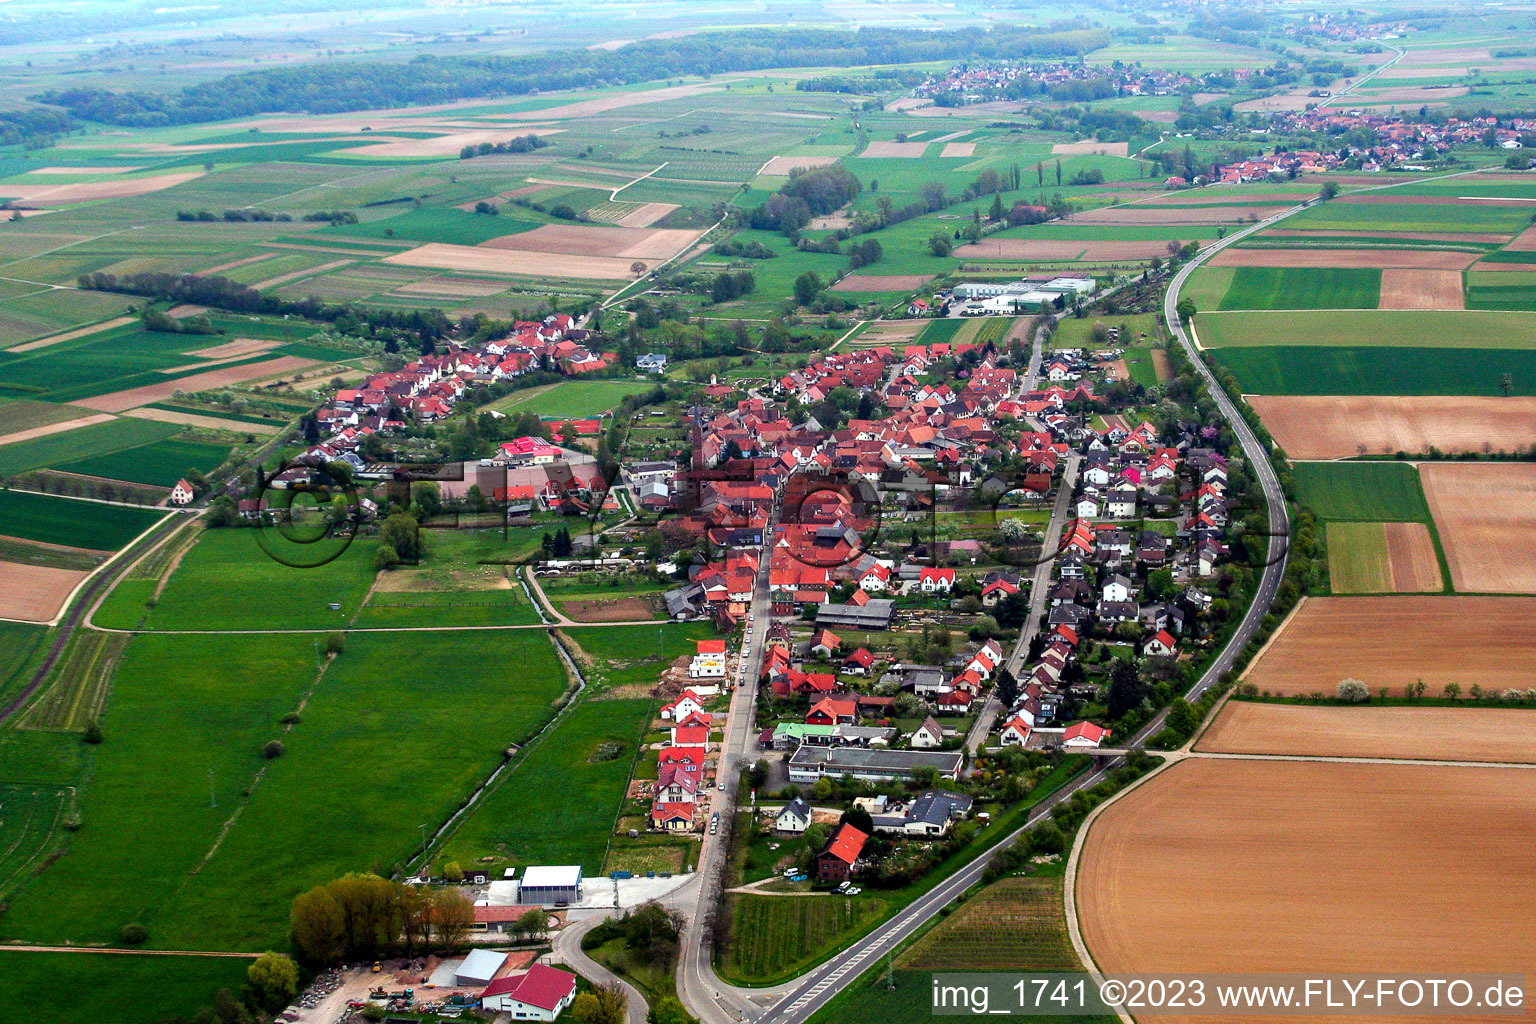 Vue aérienne de Quartier Kapellen in Kapellen-Drusweiler dans le département Rhénanie-Palatinat, Allemagne